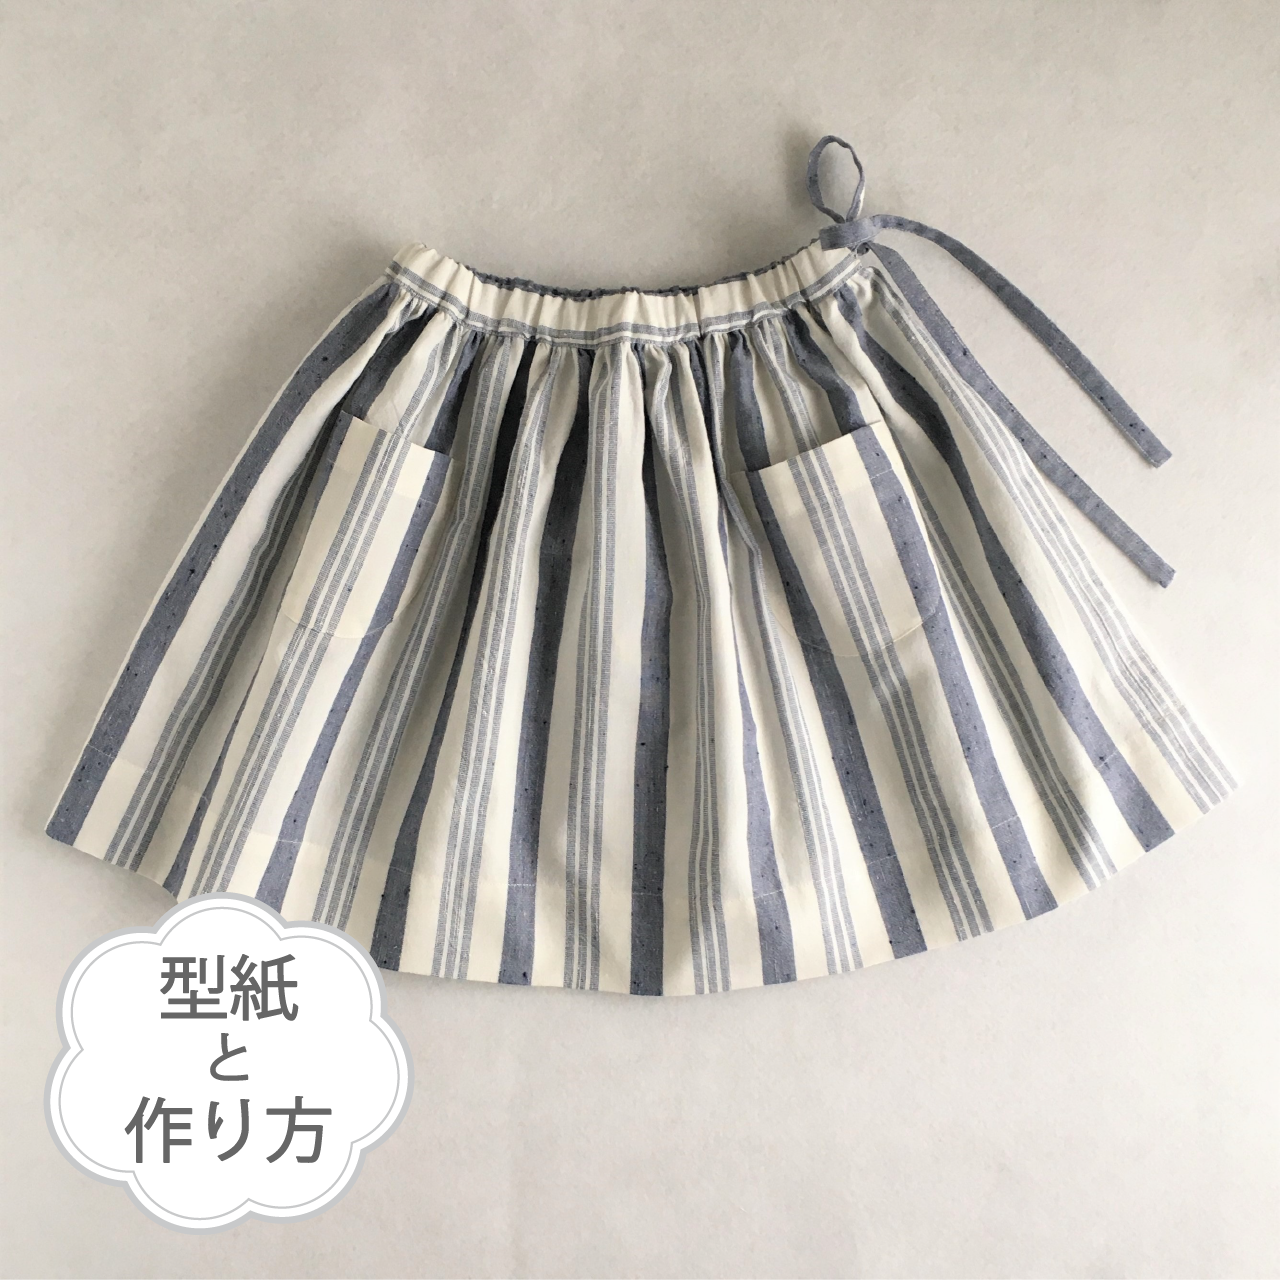 ギャザースカート 70 130サイズ 型紙 作り方のセット To Bo 1905 Ki Bo 1905 子供服の型紙 ショップ Tsukuro ツクロ